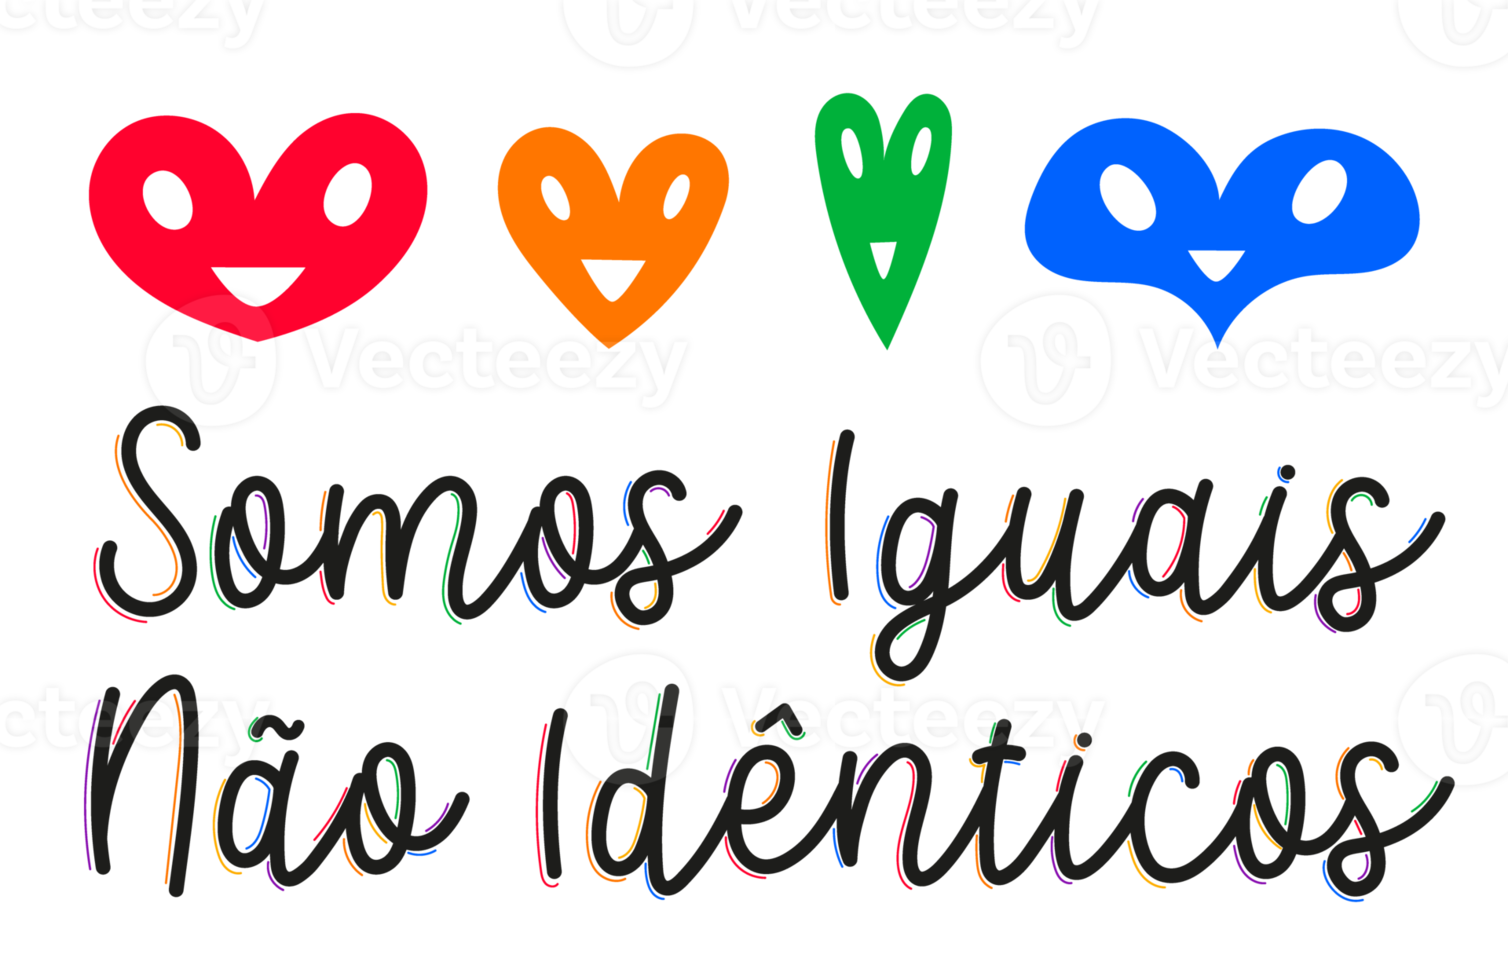 diversidad colorida que fomenta letras cursivas en portugués con corazones. colores lgbtqia. traducción - somos iguales, no idénticos. png